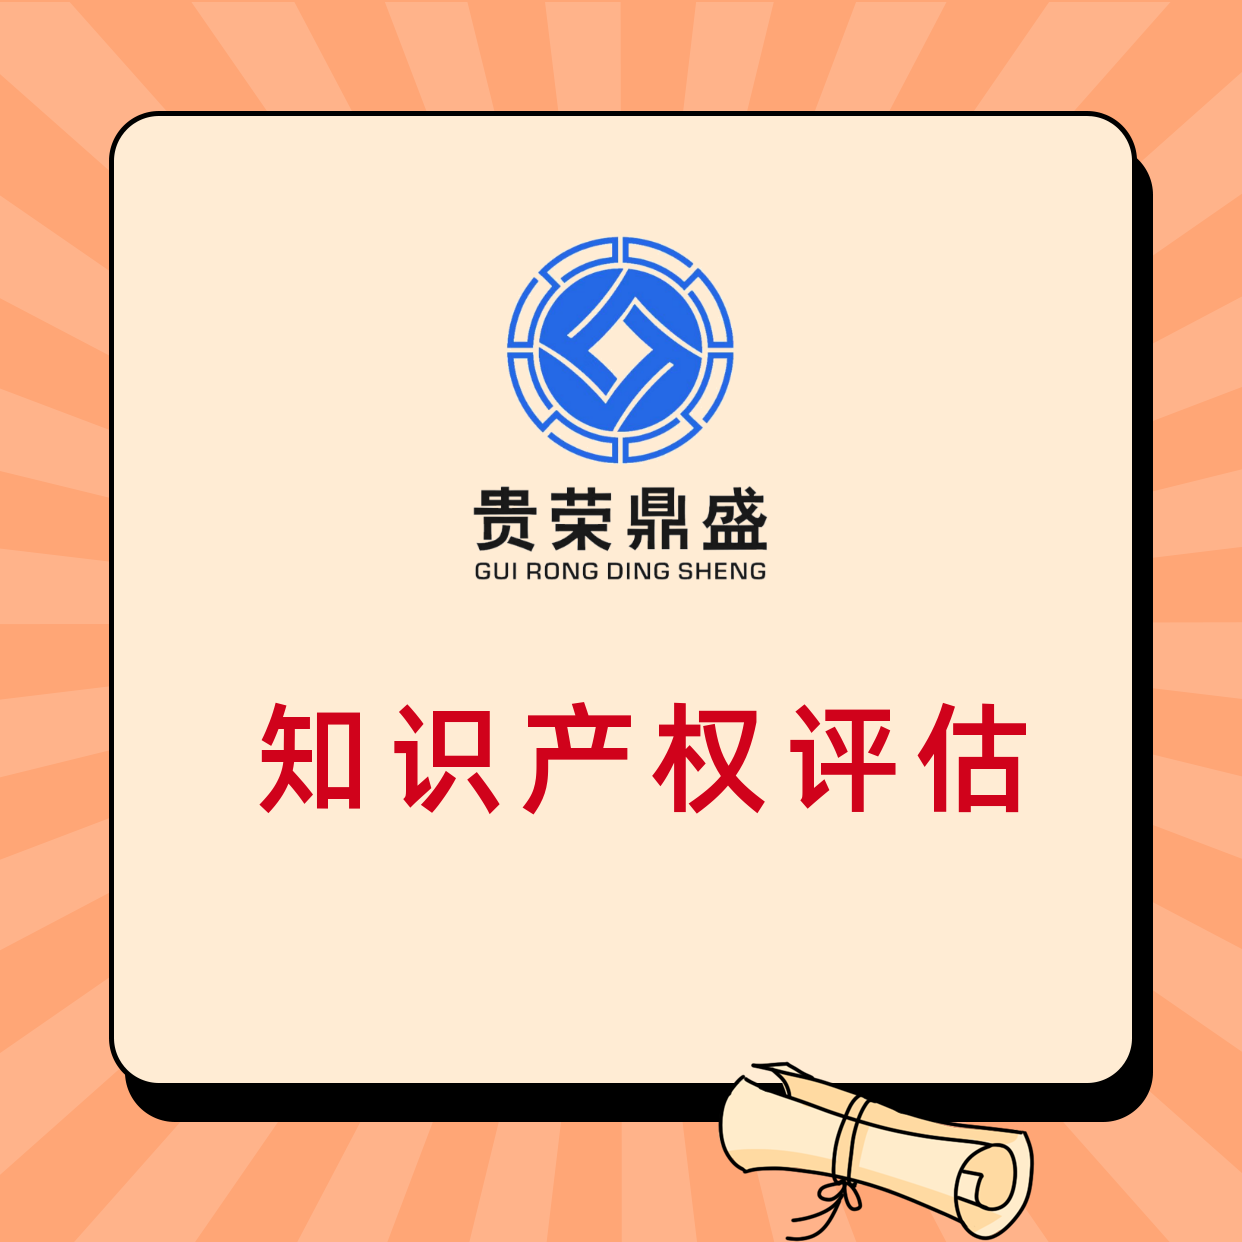 成都市浦江县公司的无形资产怎么评估知识产权评估方法有哪些